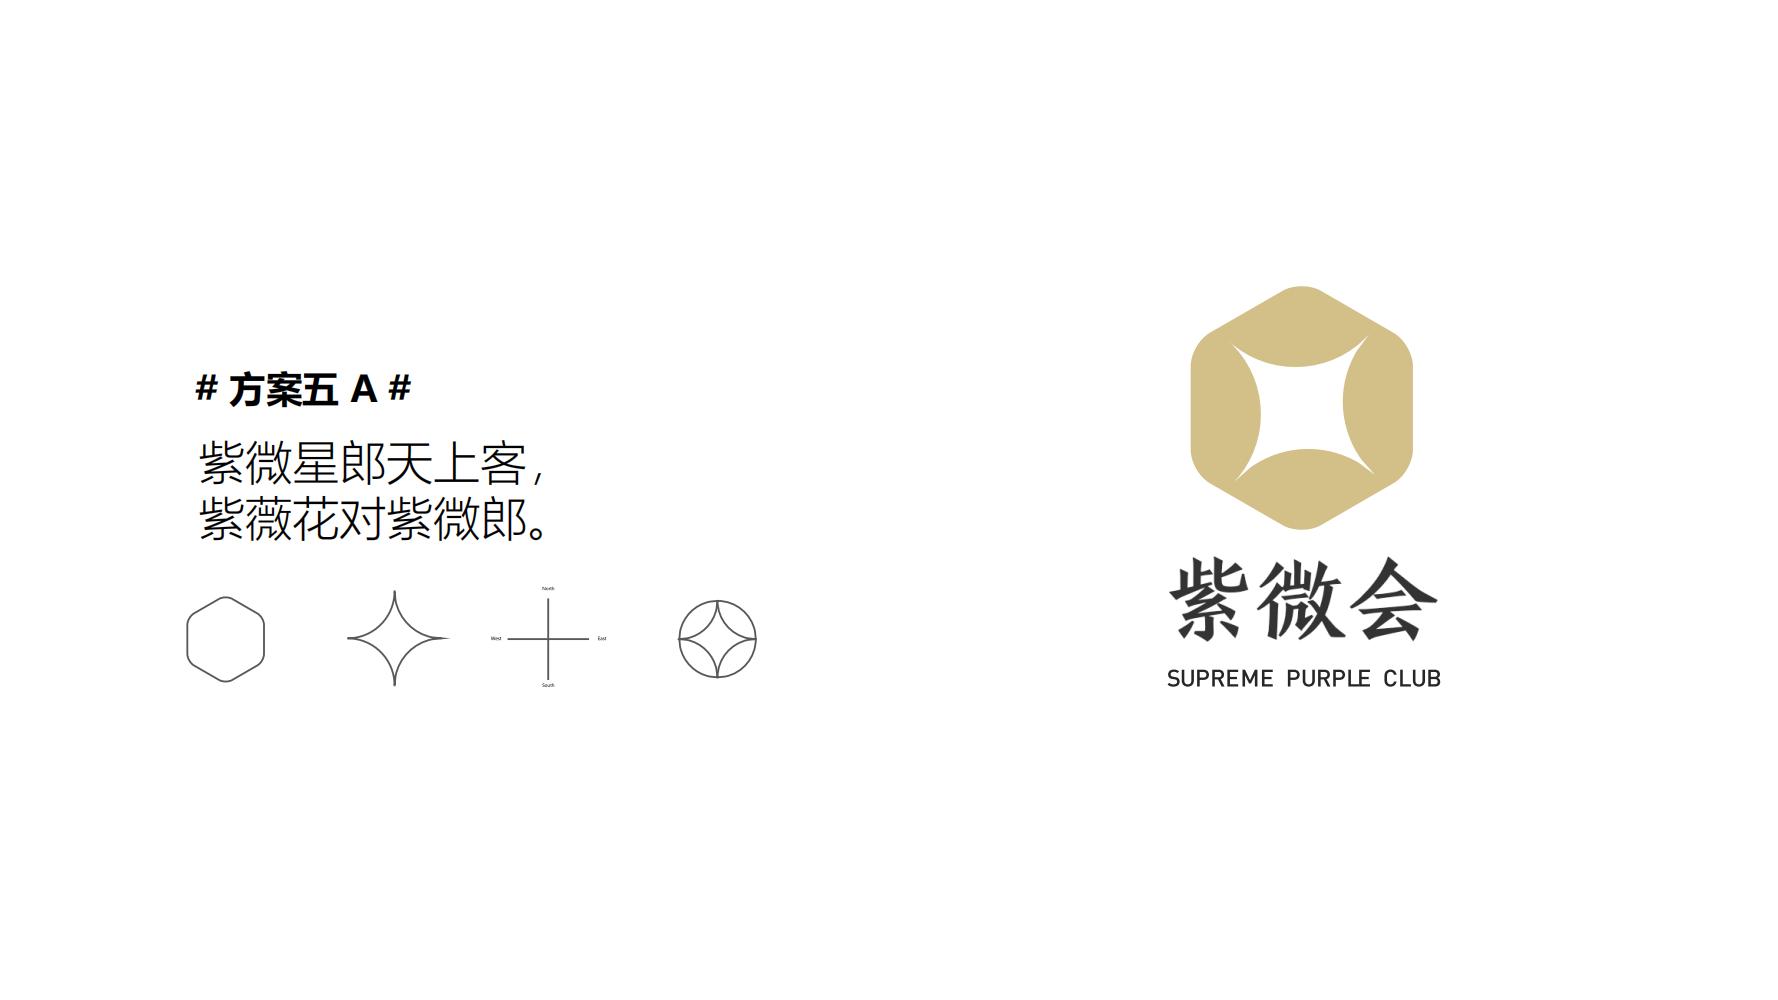 【夺幕 SLIDESIGN】星河控股集团品牌设计方案_70.jpg